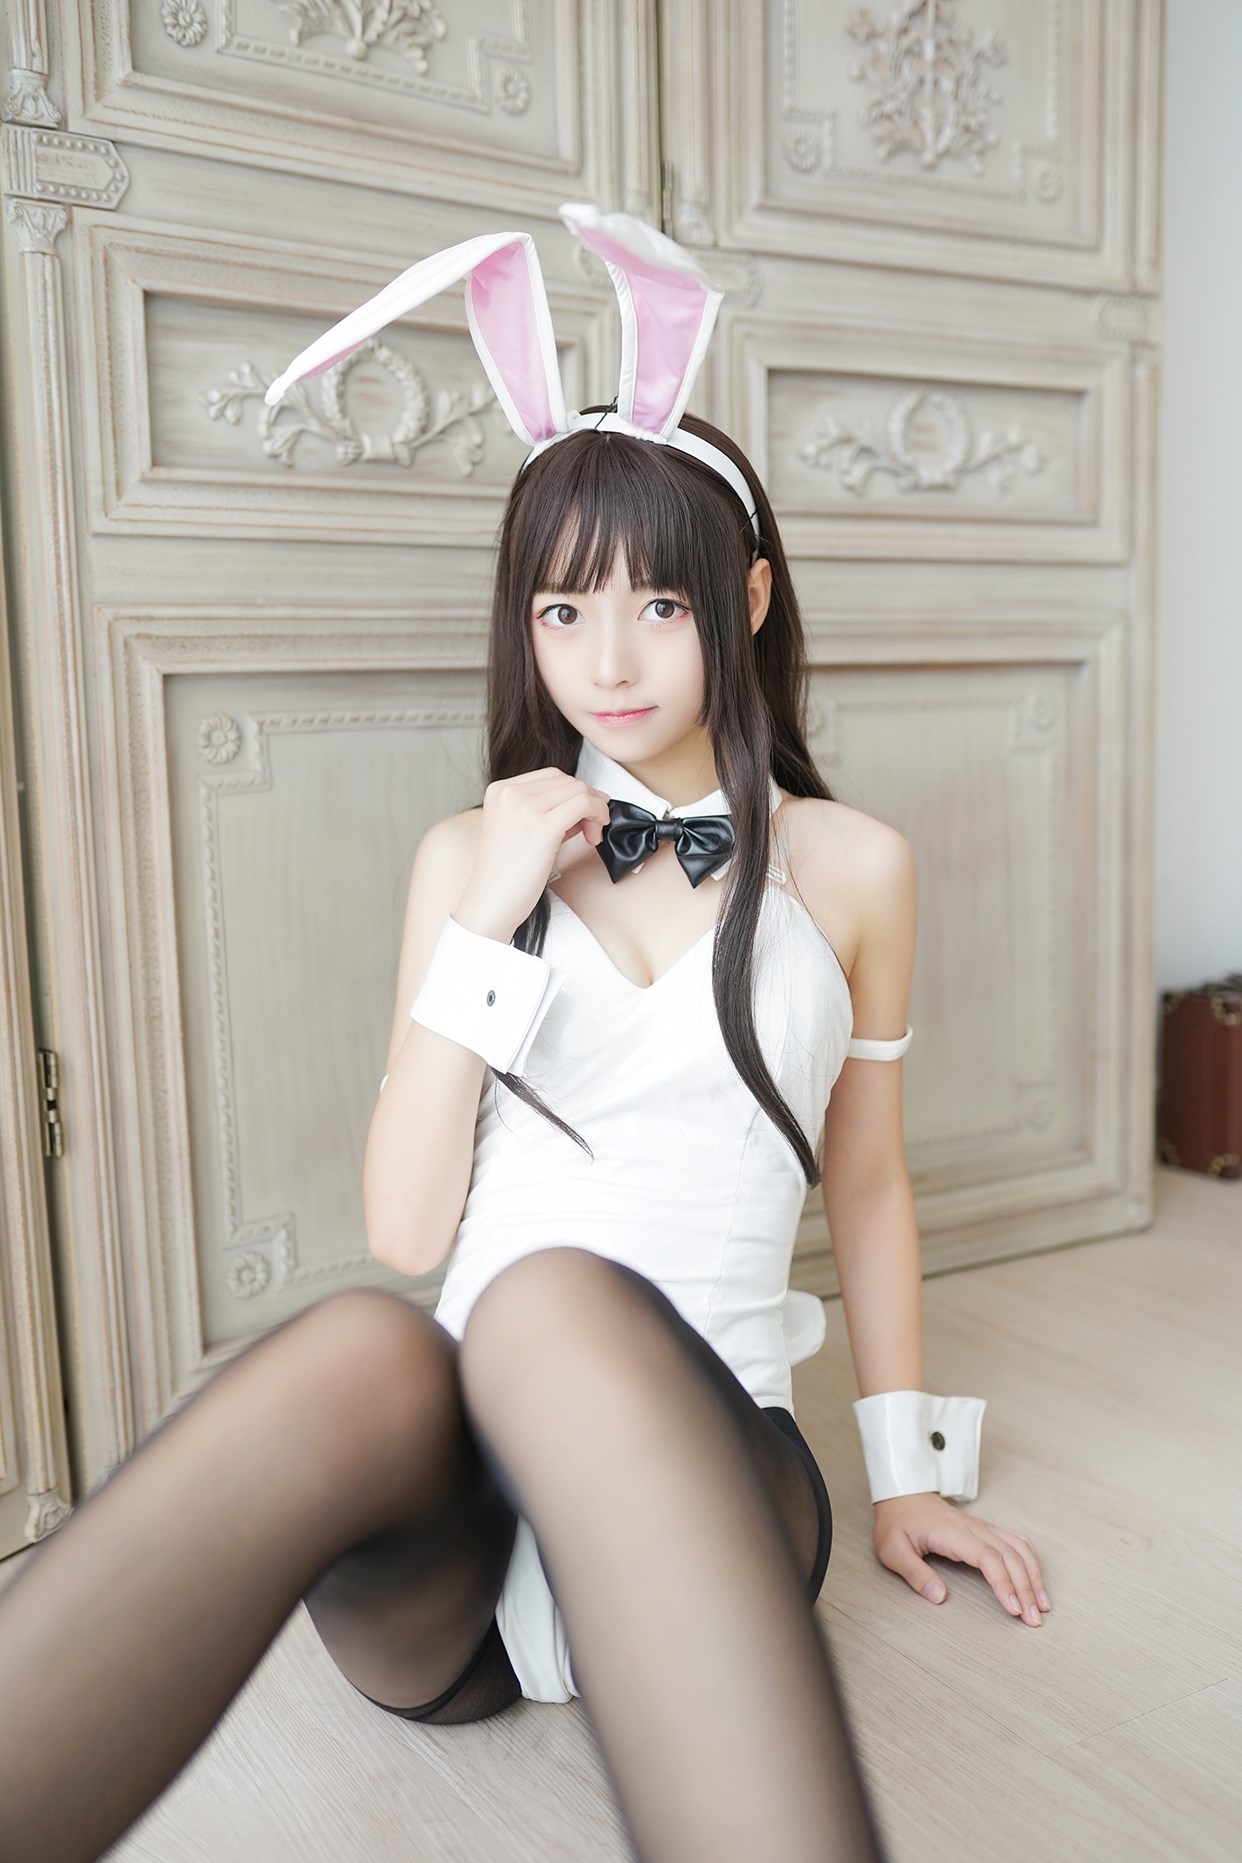 【兔玩映画】兔女郎vol.17-白兔 兔玩映画 第16张